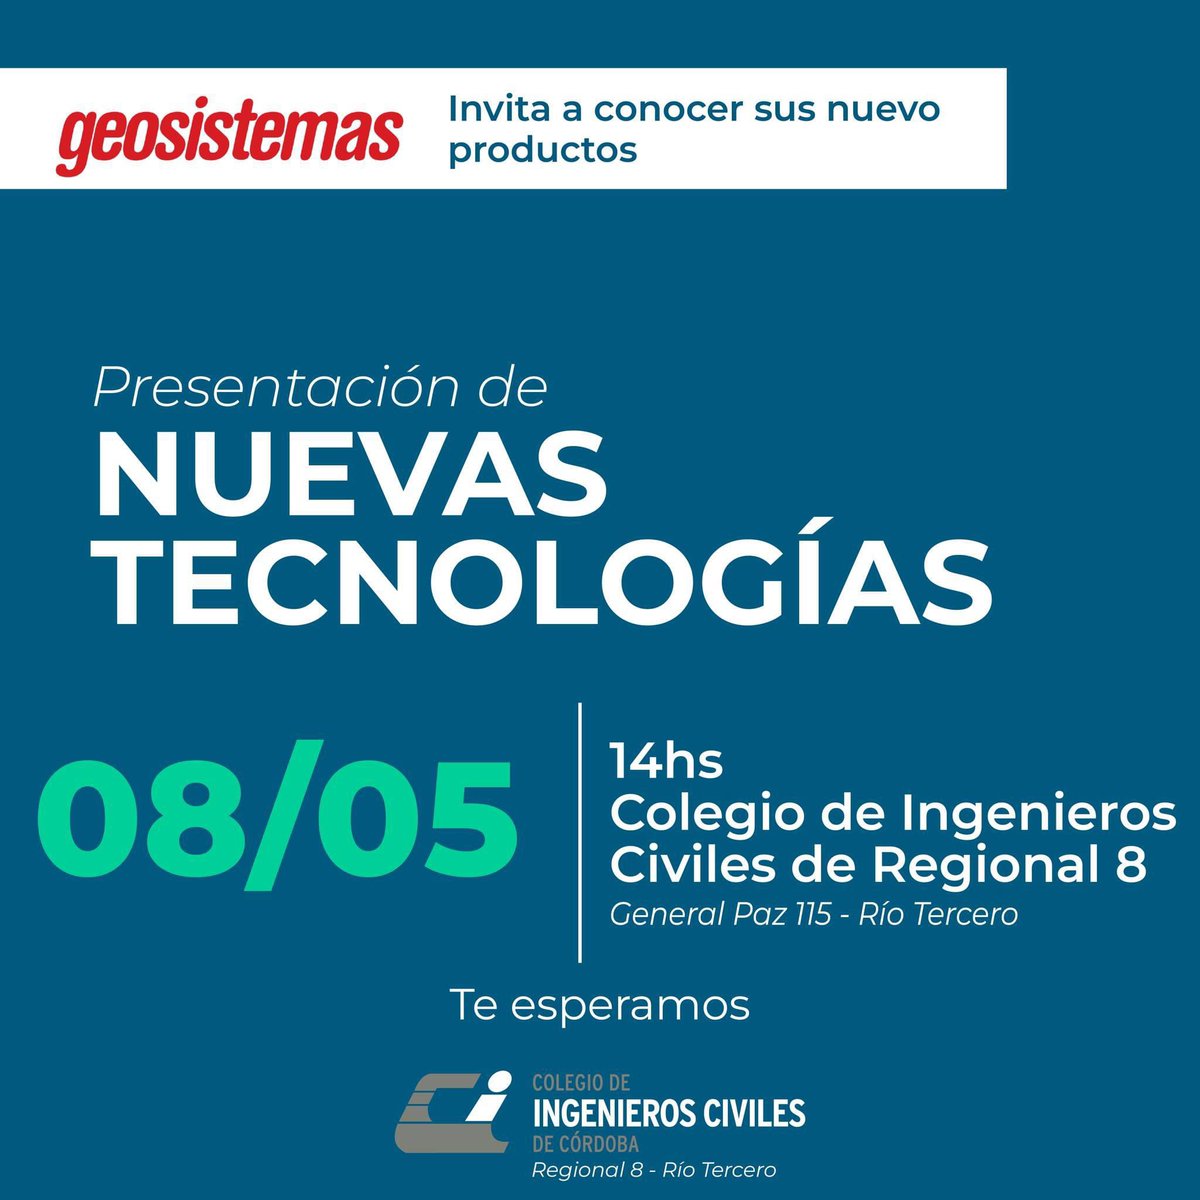 Atención Ingenieros Civiles de Córdoba. Los esperamos en la Regional el día miércoles para la presentación de Nuevas Tecnologías

#ingenieria #topografia #gnss